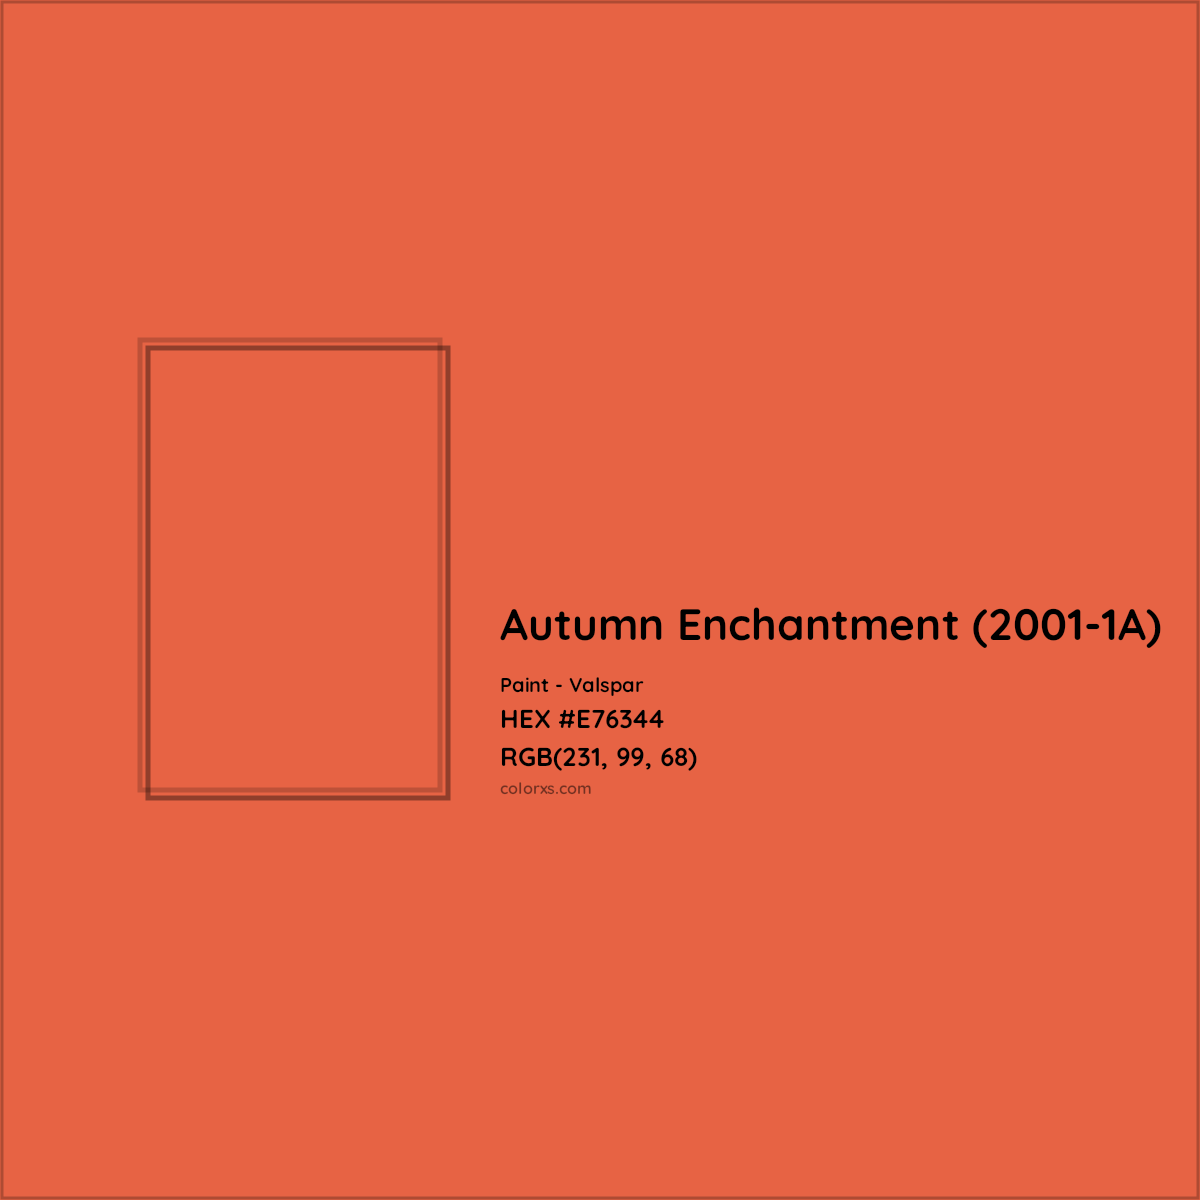 HEX #E76344 Autumn Enchantment (2001-1A) Paint Valspar - Color Code